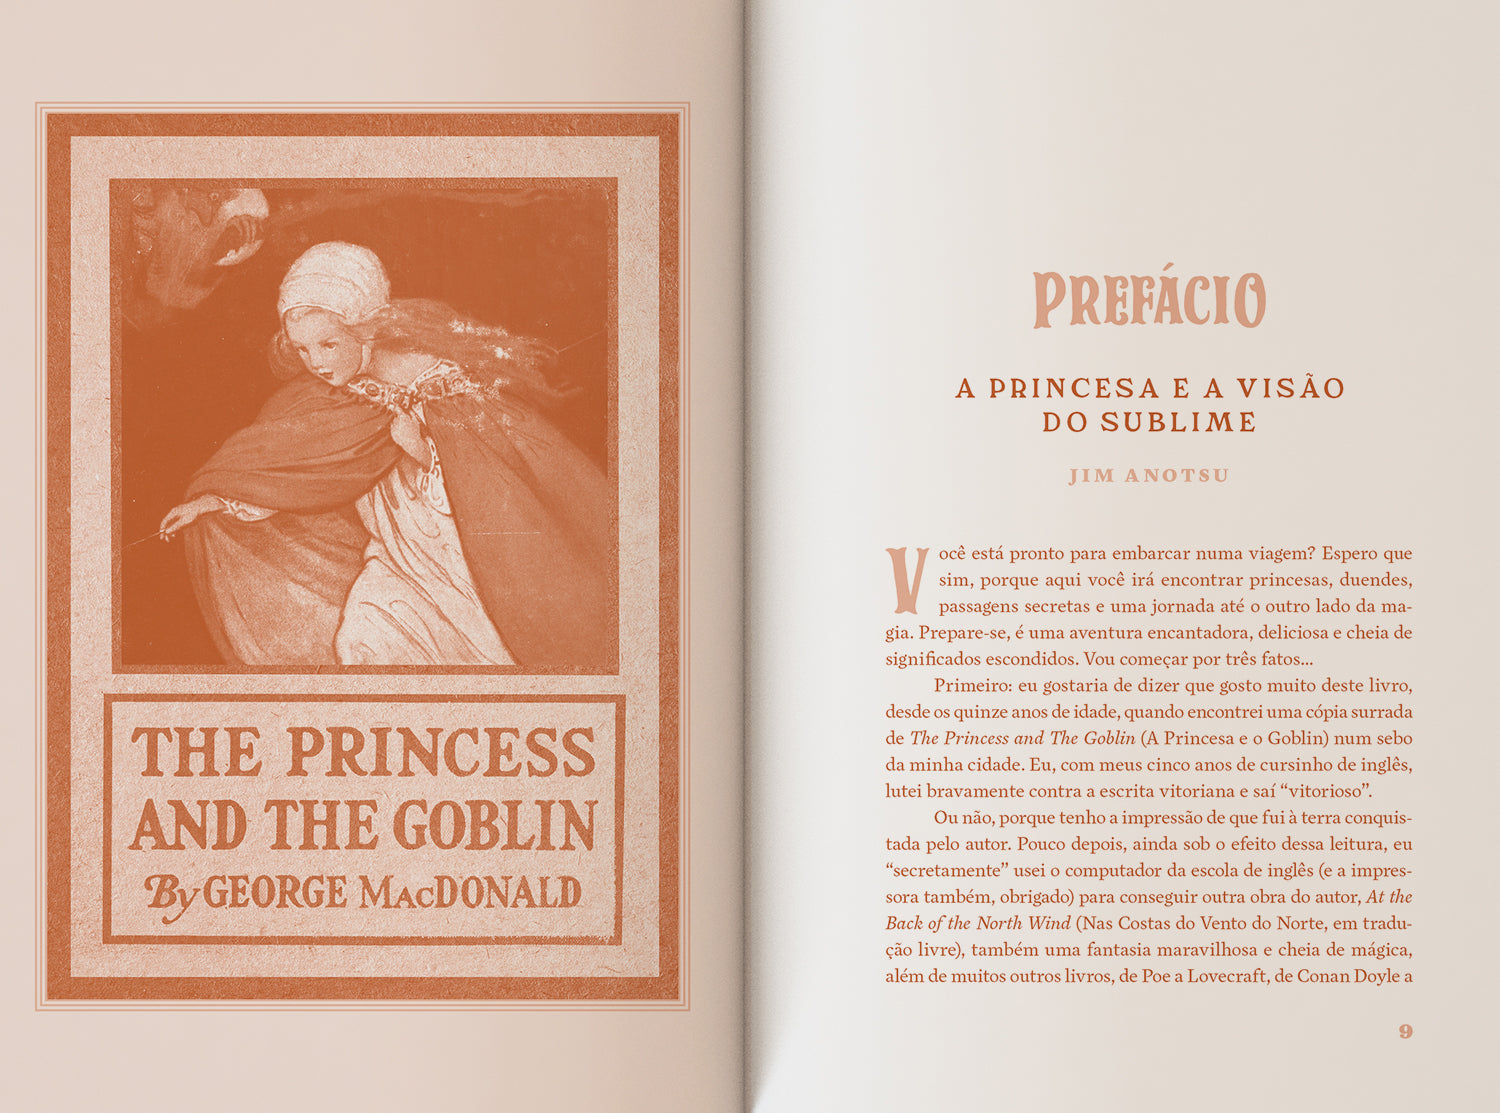 A Princesa e o Goblin